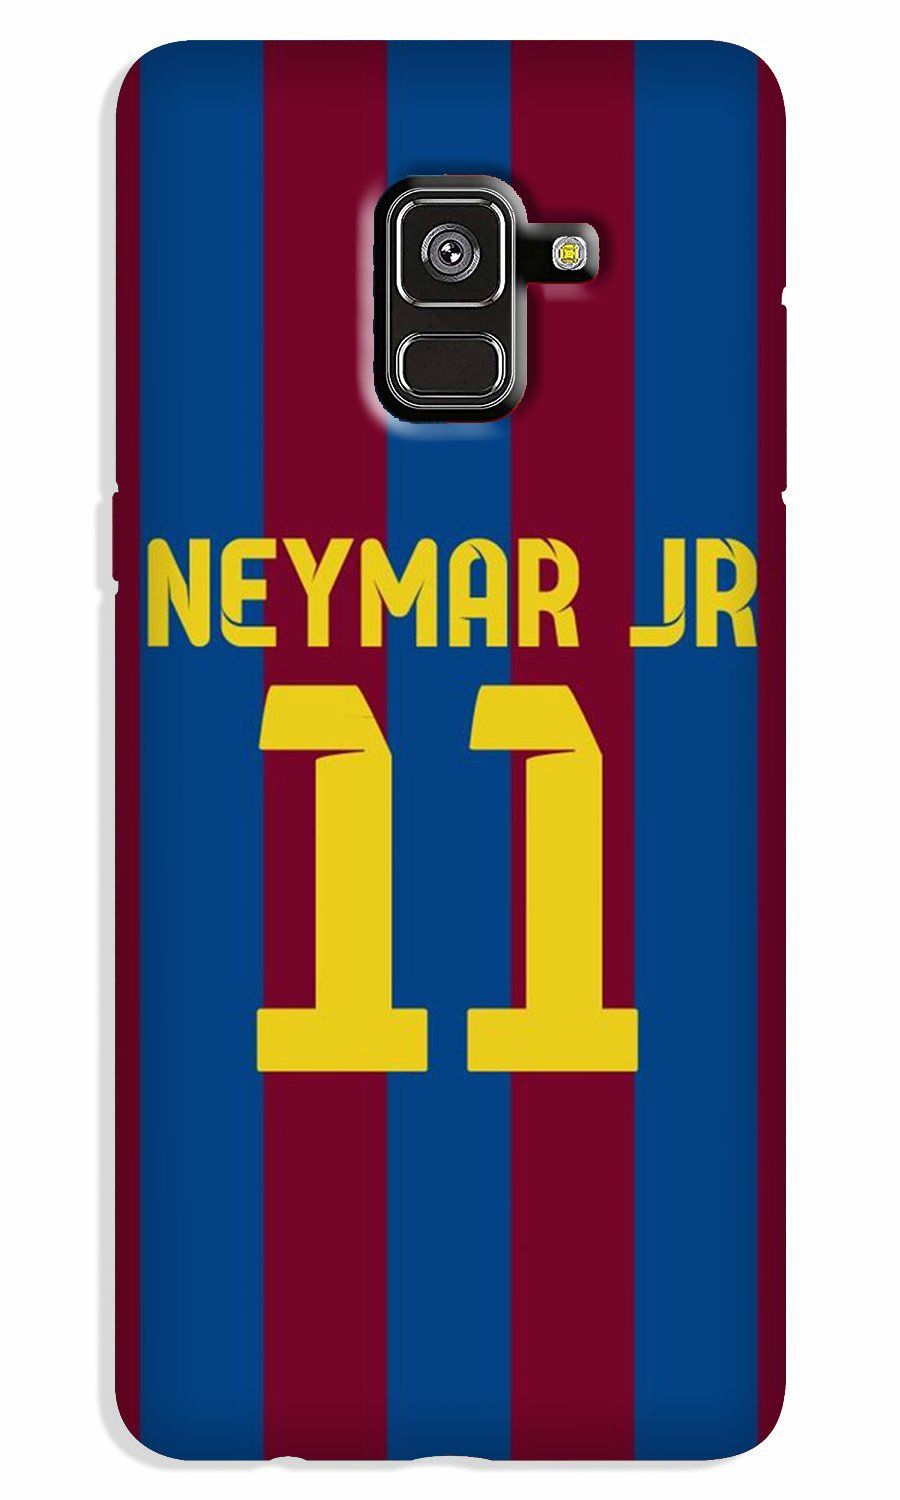 Neymar Jr Case for Galaxy A8 Plus(Design - 162)